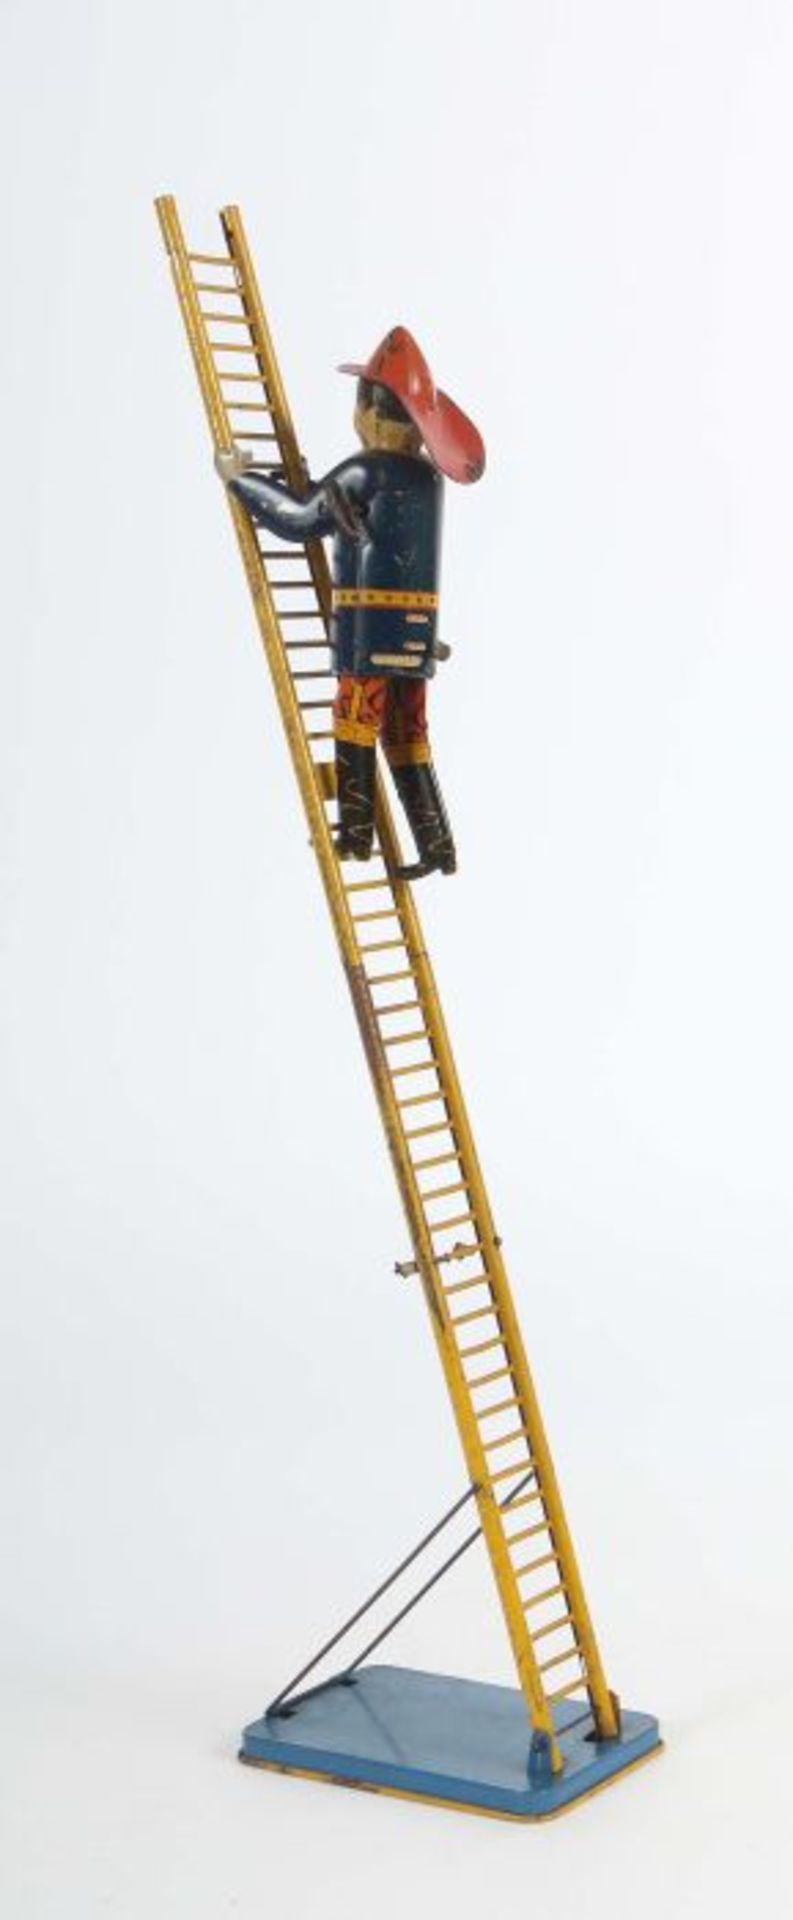 Amerikanischer FeuerwehrmannLouis Marx & Co. NY. USA, "Fireman ladder", Blech lithografiert, - Bild 2 aus 3